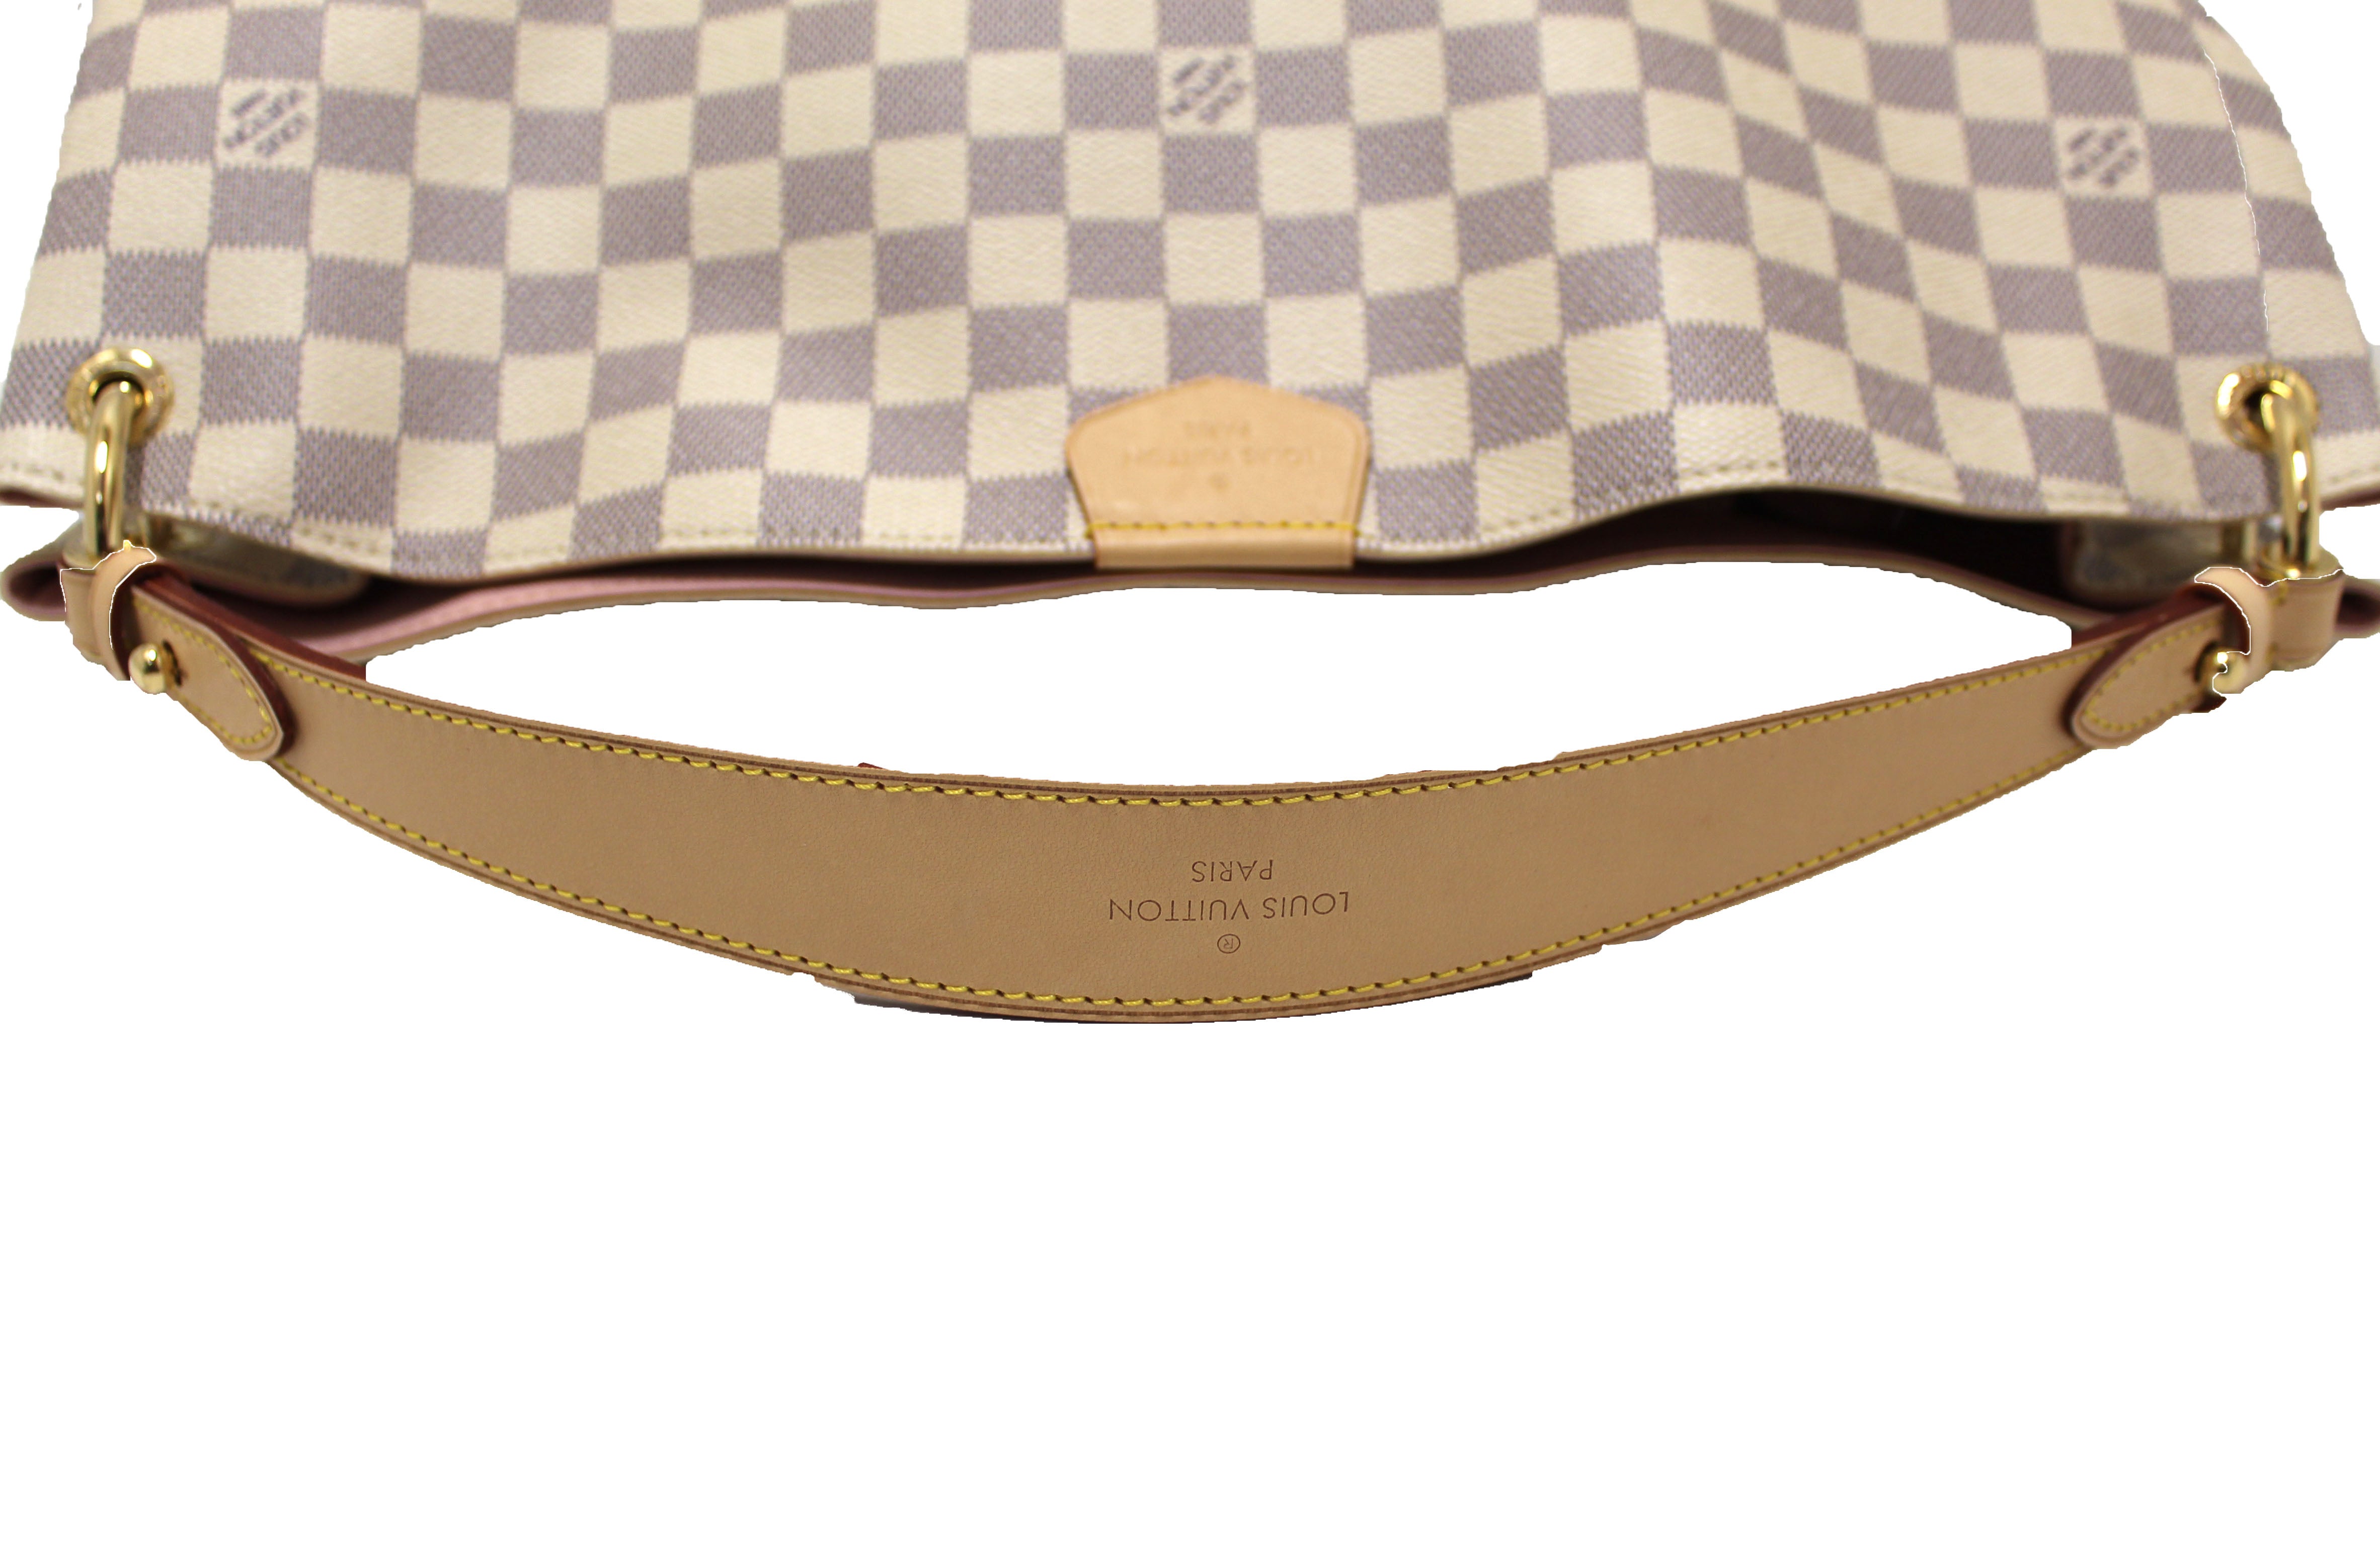 Louis Vuitton Damier Azur Graceful MM Hobo Shoulder Bag – Italy Station